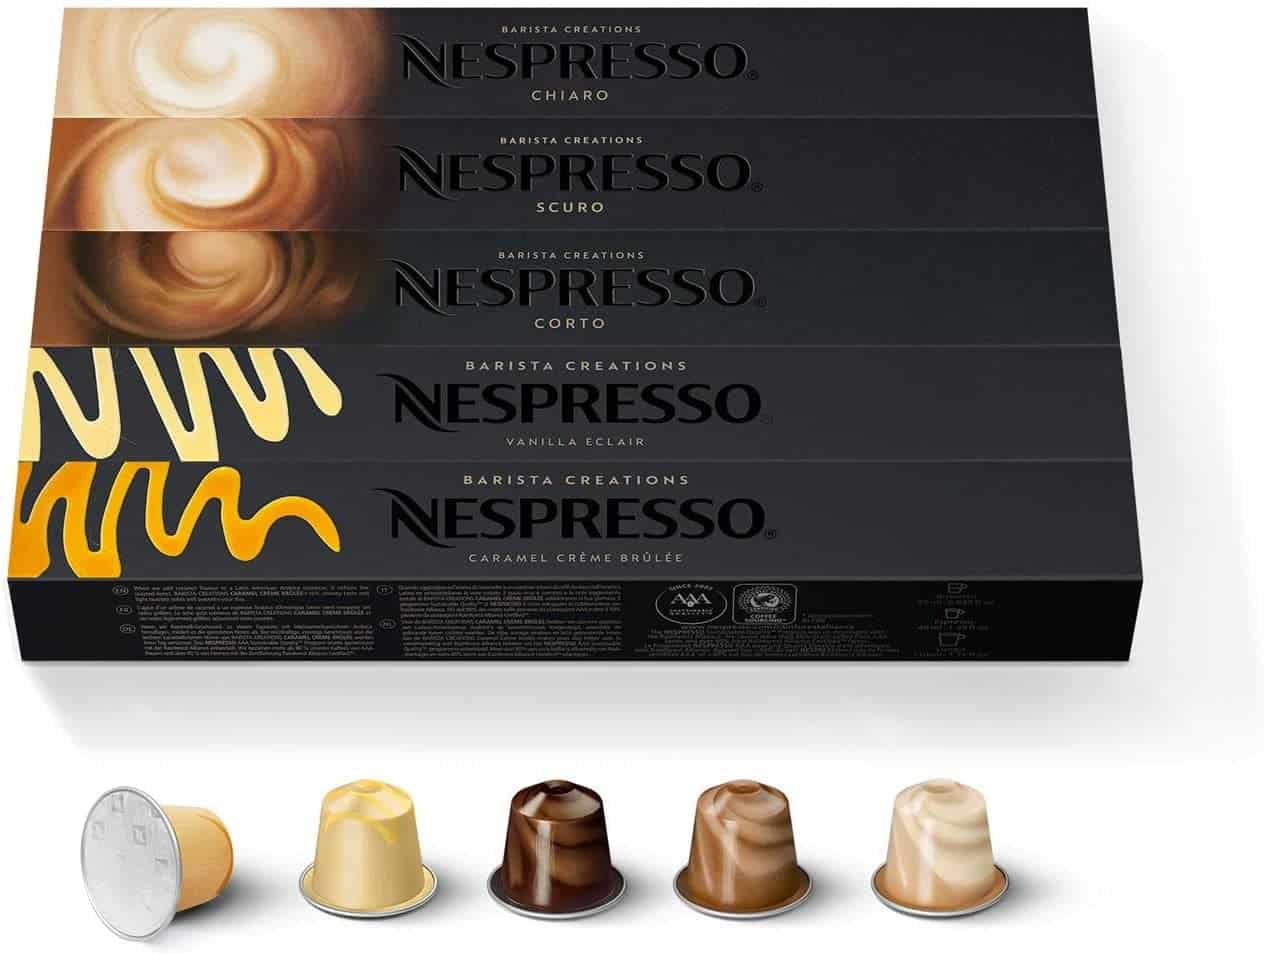 Nespresso Original Assortiment Barista Creations